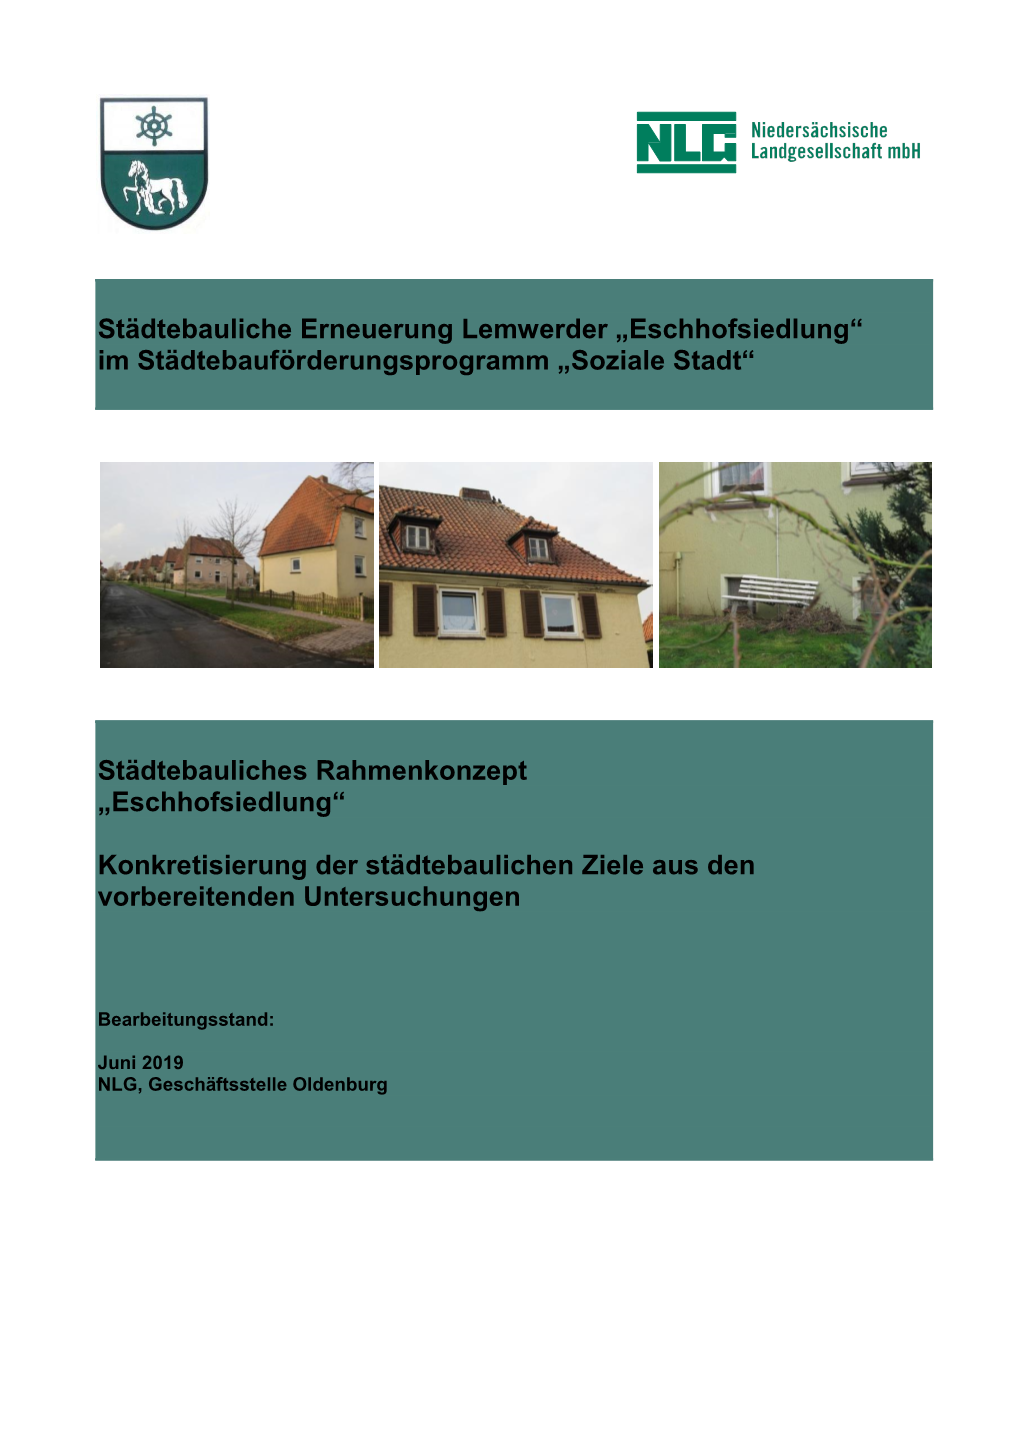 Eschhofsiedlung“ Im Städtebauförderungsprogramm „Soziale Stadt“